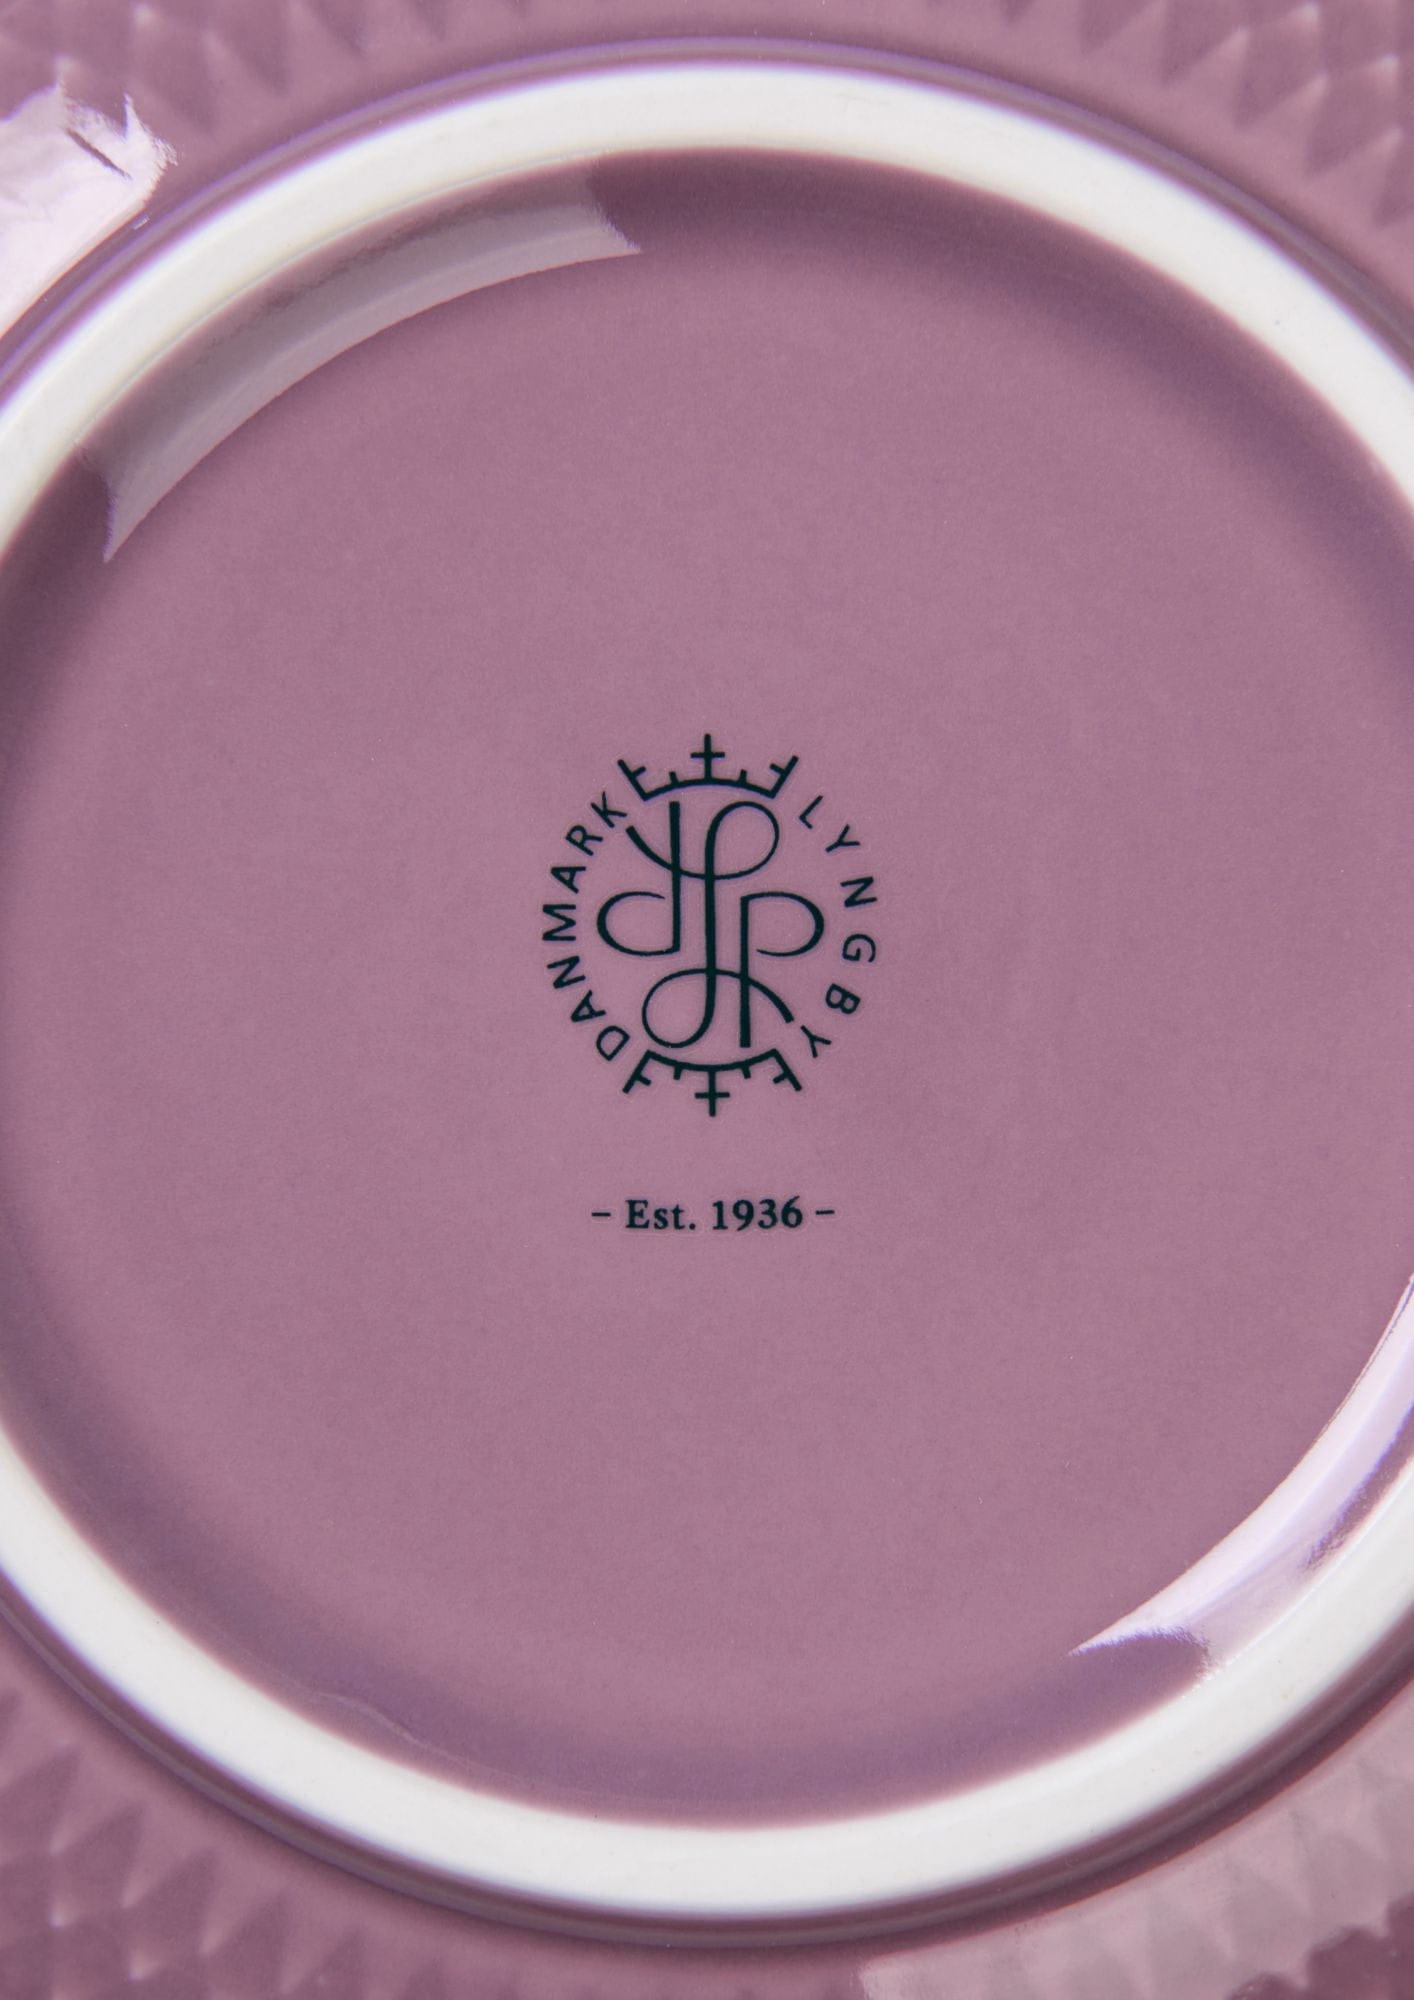 Lyngby Porcelæn Rhombe Color Bowl Ø15,5 cm, fialová